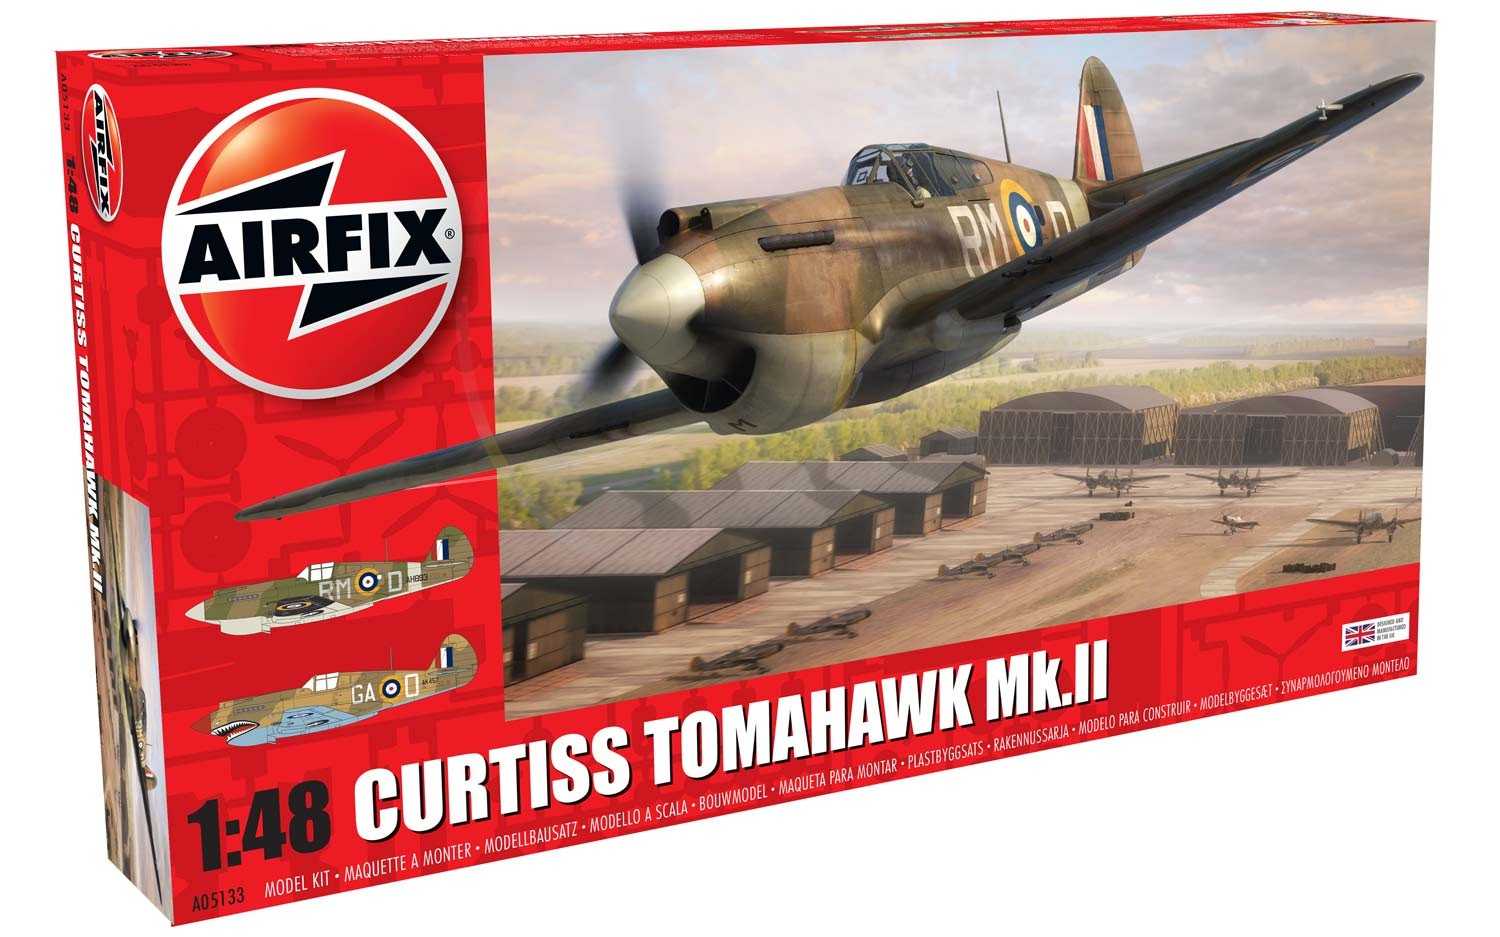 Classic Kit letadlo A05133 - Curtiss Tomahawk MK.II (1:48)